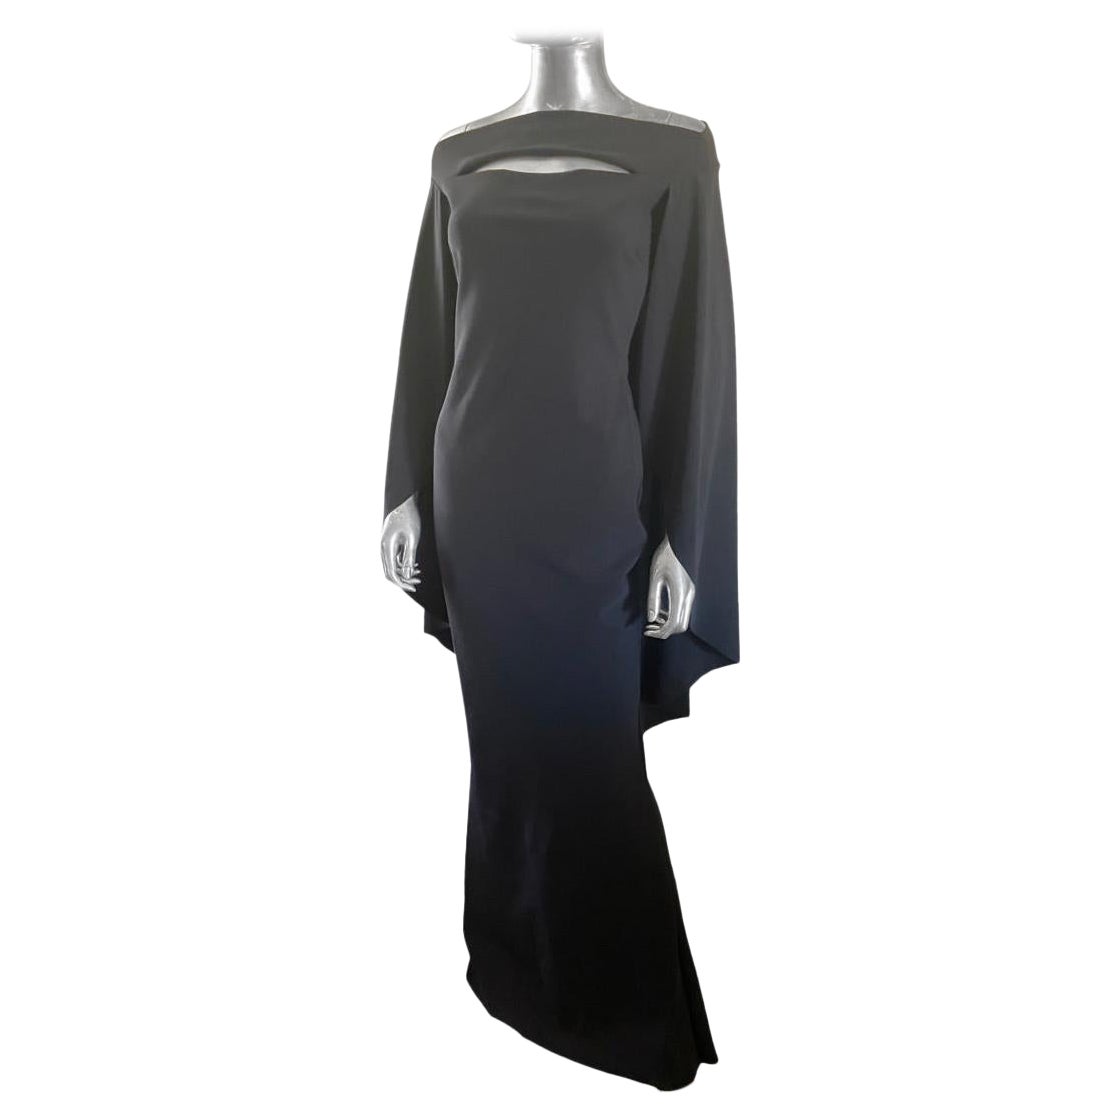 Chic Chiara Boni Modern Black Capelet Cutout Mermaid Long Dress Size 4 For Sale